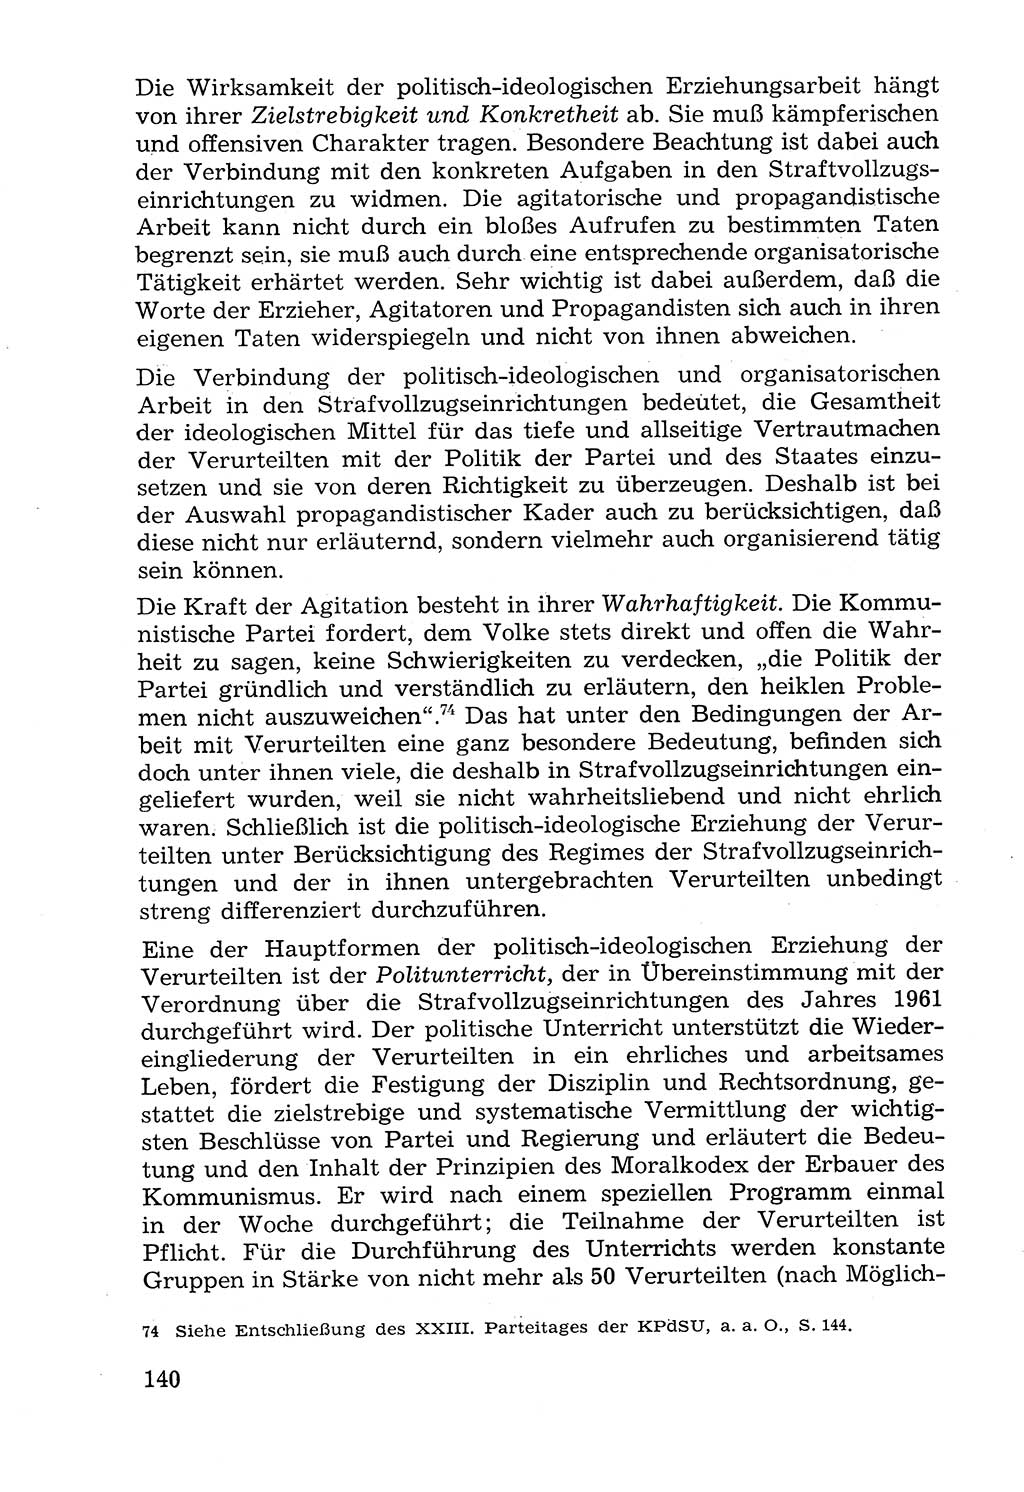 Lehrbuch der Strafvollzugspädagogik [Deutsche Demokratische Republik (DDR)] 1969, Seite 140 (Lb. SV-Pd. DDR 1969, S. 140)